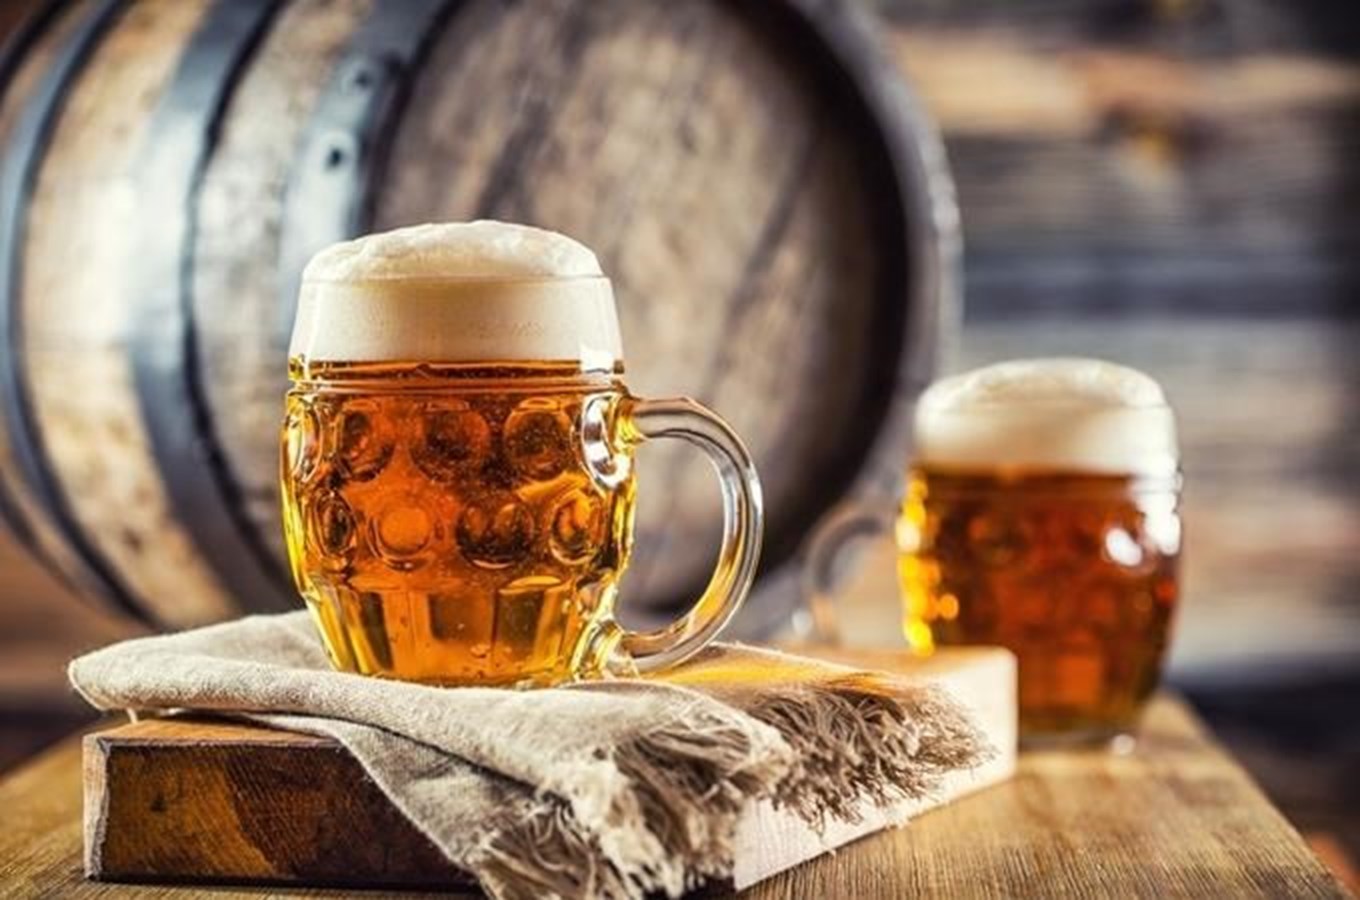 Tipy, kam za dobrým pivem do tradičních i nových pivovarů